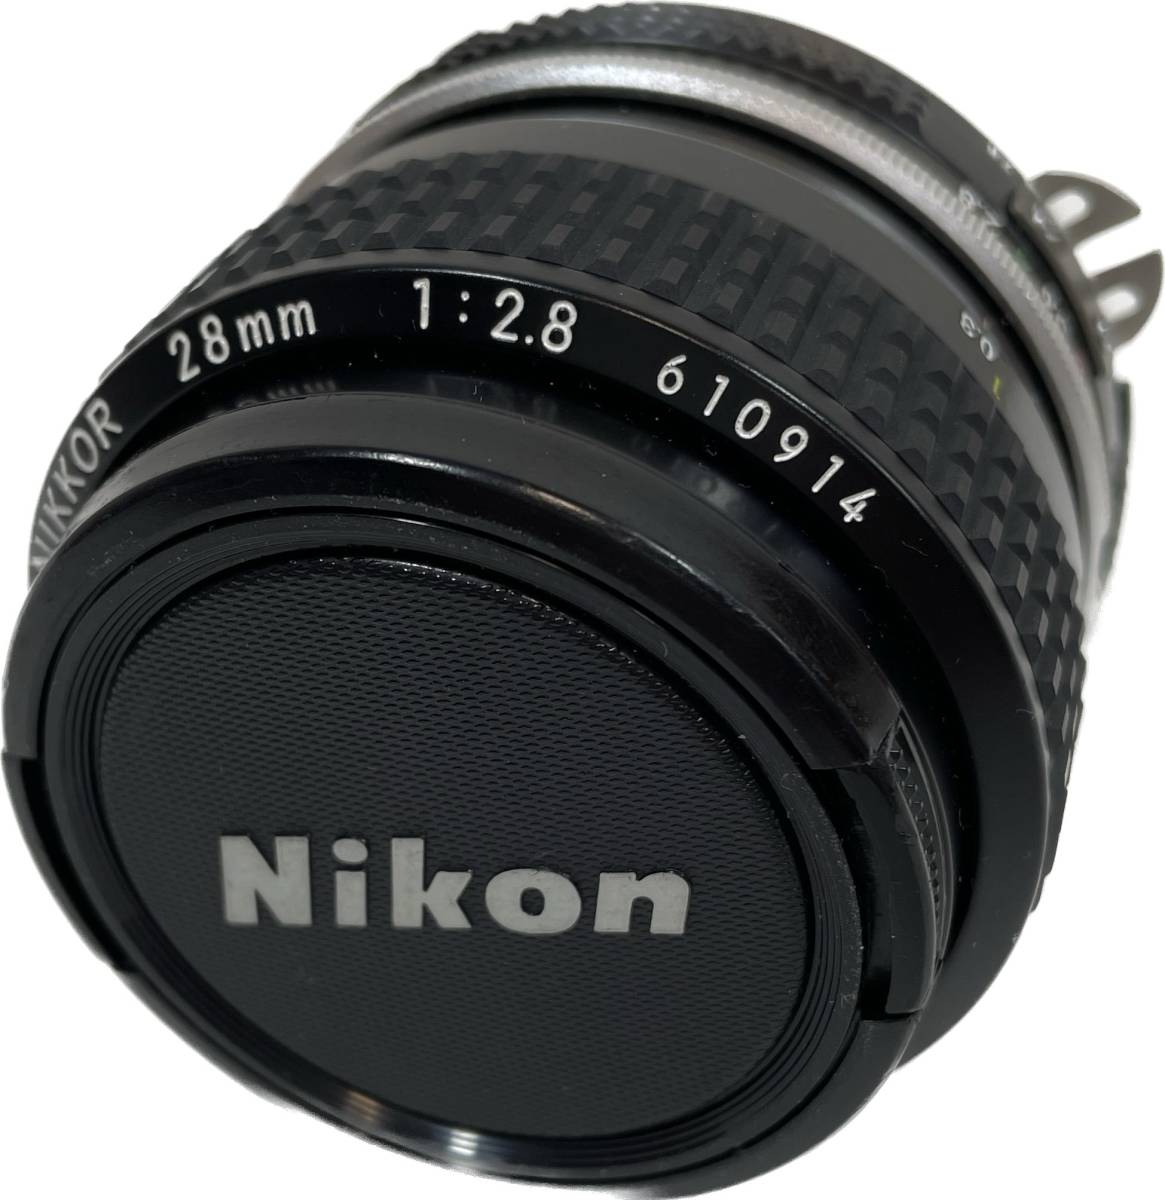 日本代理店正規品 13703 極上品 Nikon Ai-S 28mm F2 ニコン オールド 